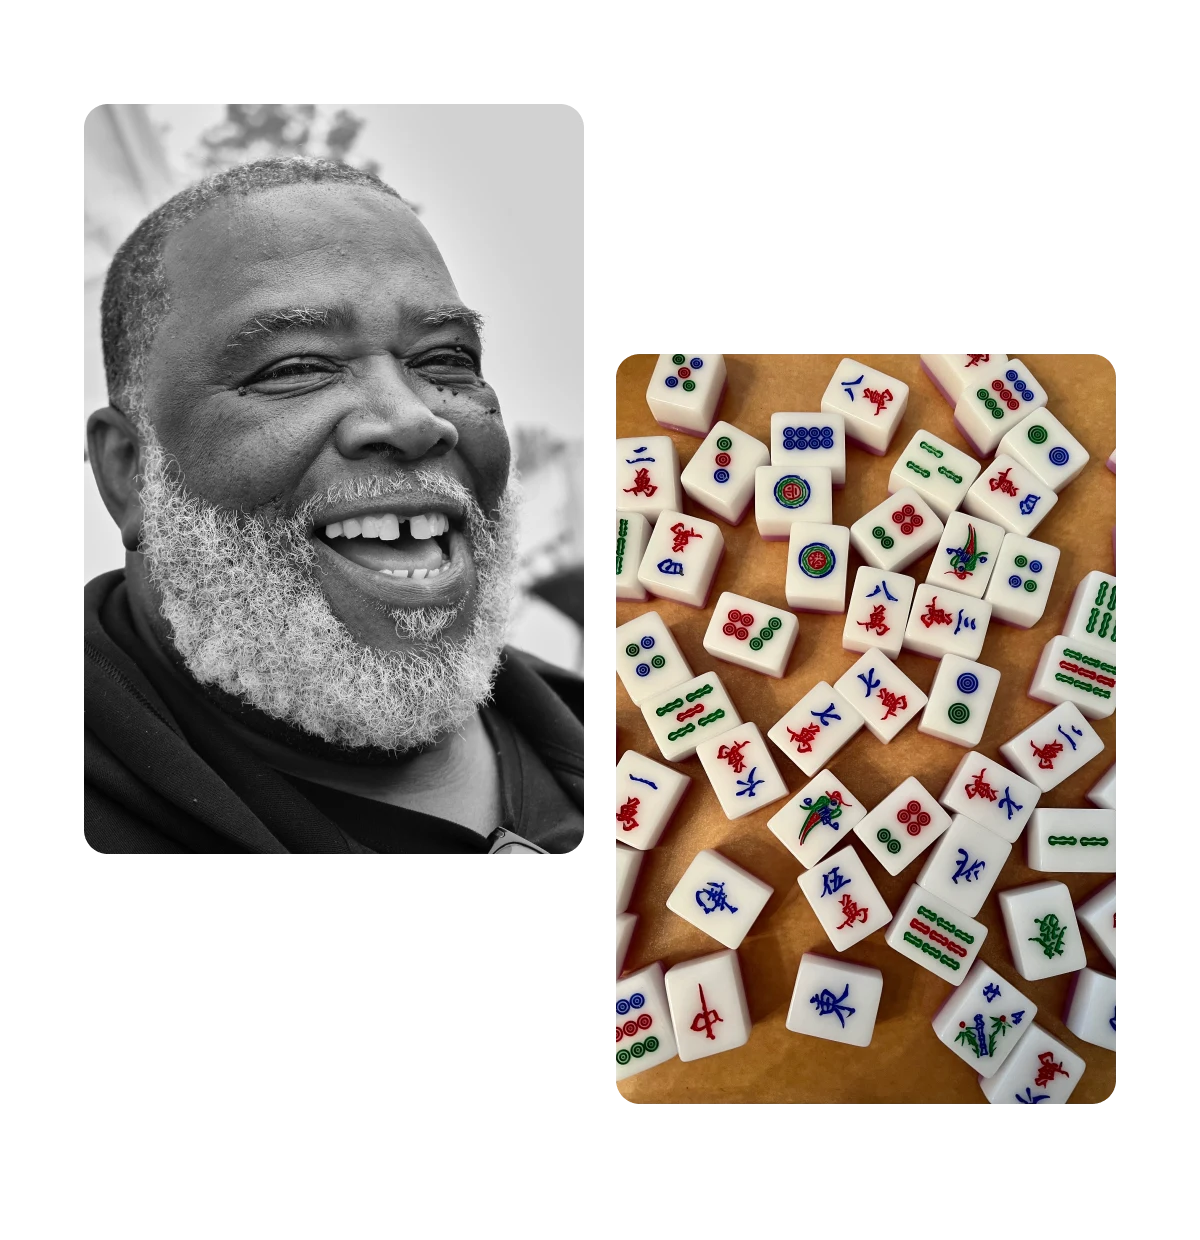 Dois Pins, homem idoso sorrindo, peças do jogo mahjong